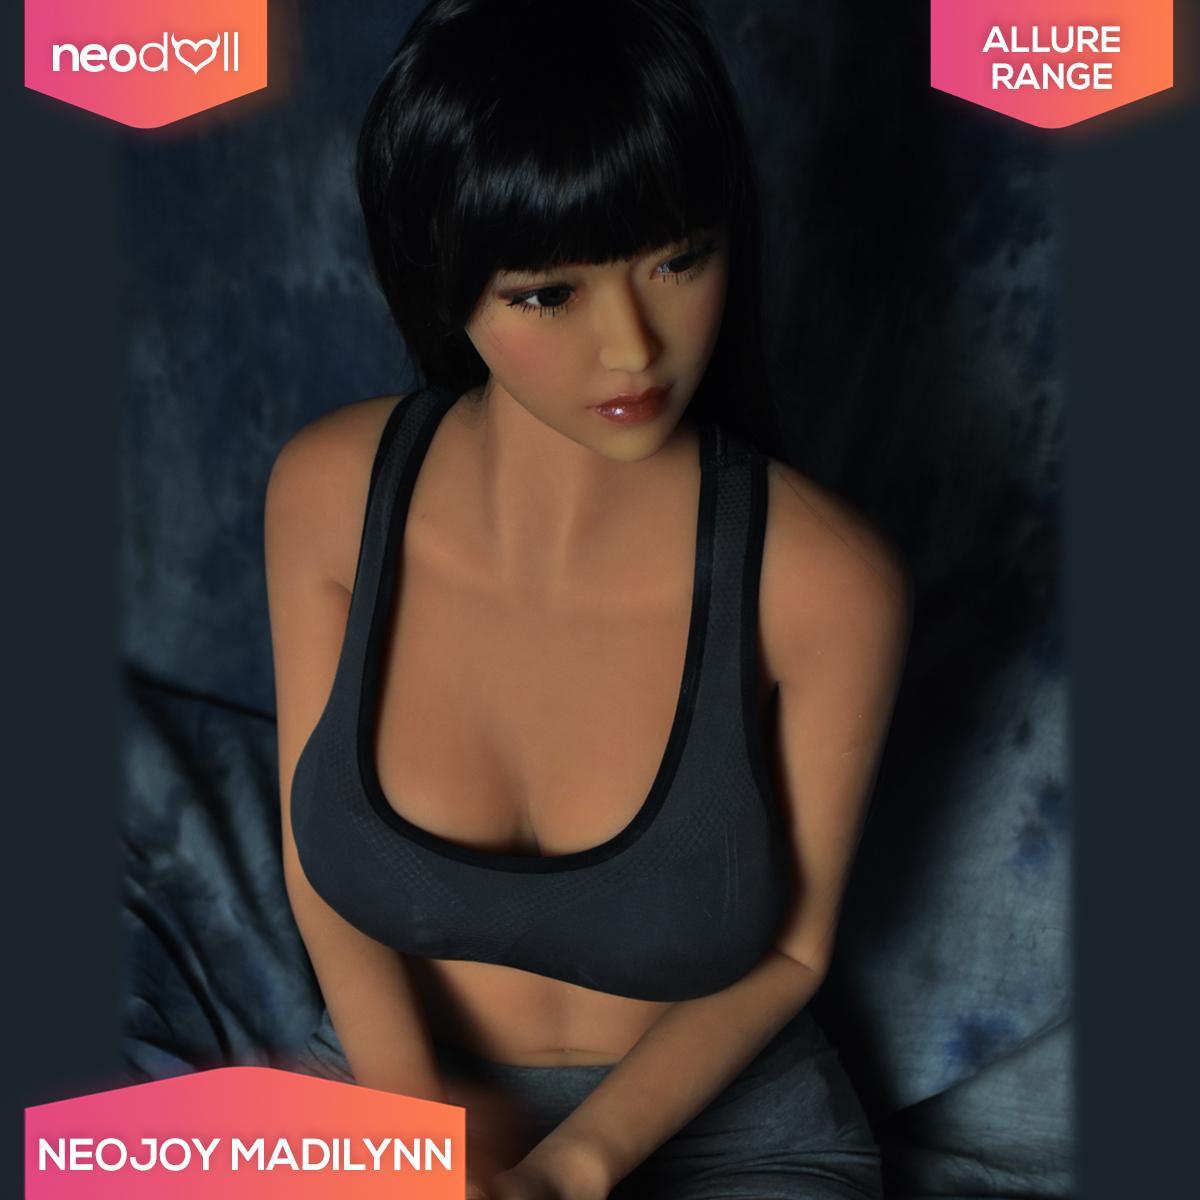 Sex Doll Madilynn | 160cm Height | Tan Skin | Shrug & Standing | Neodoll Allure